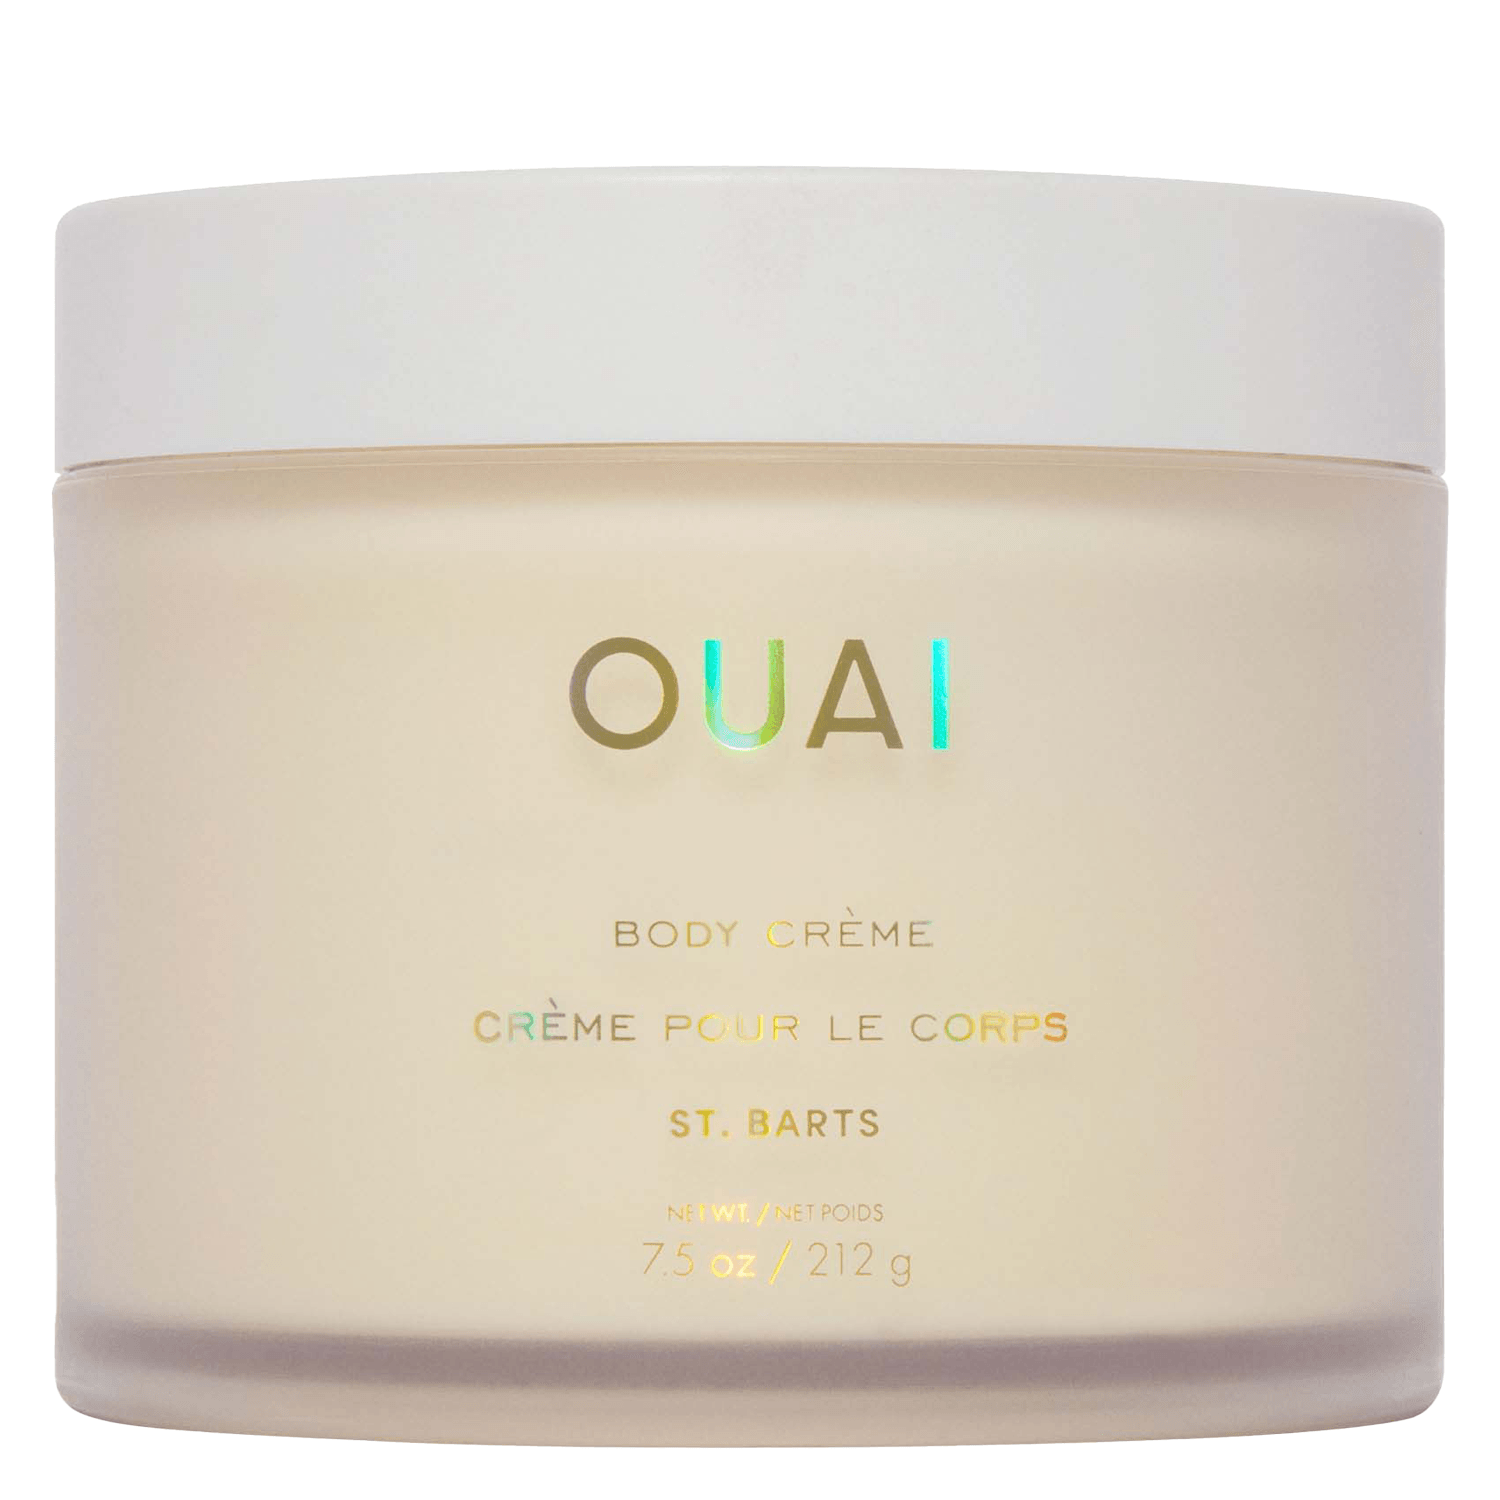 Produktbild von OUAI - Body Crème St. Barts